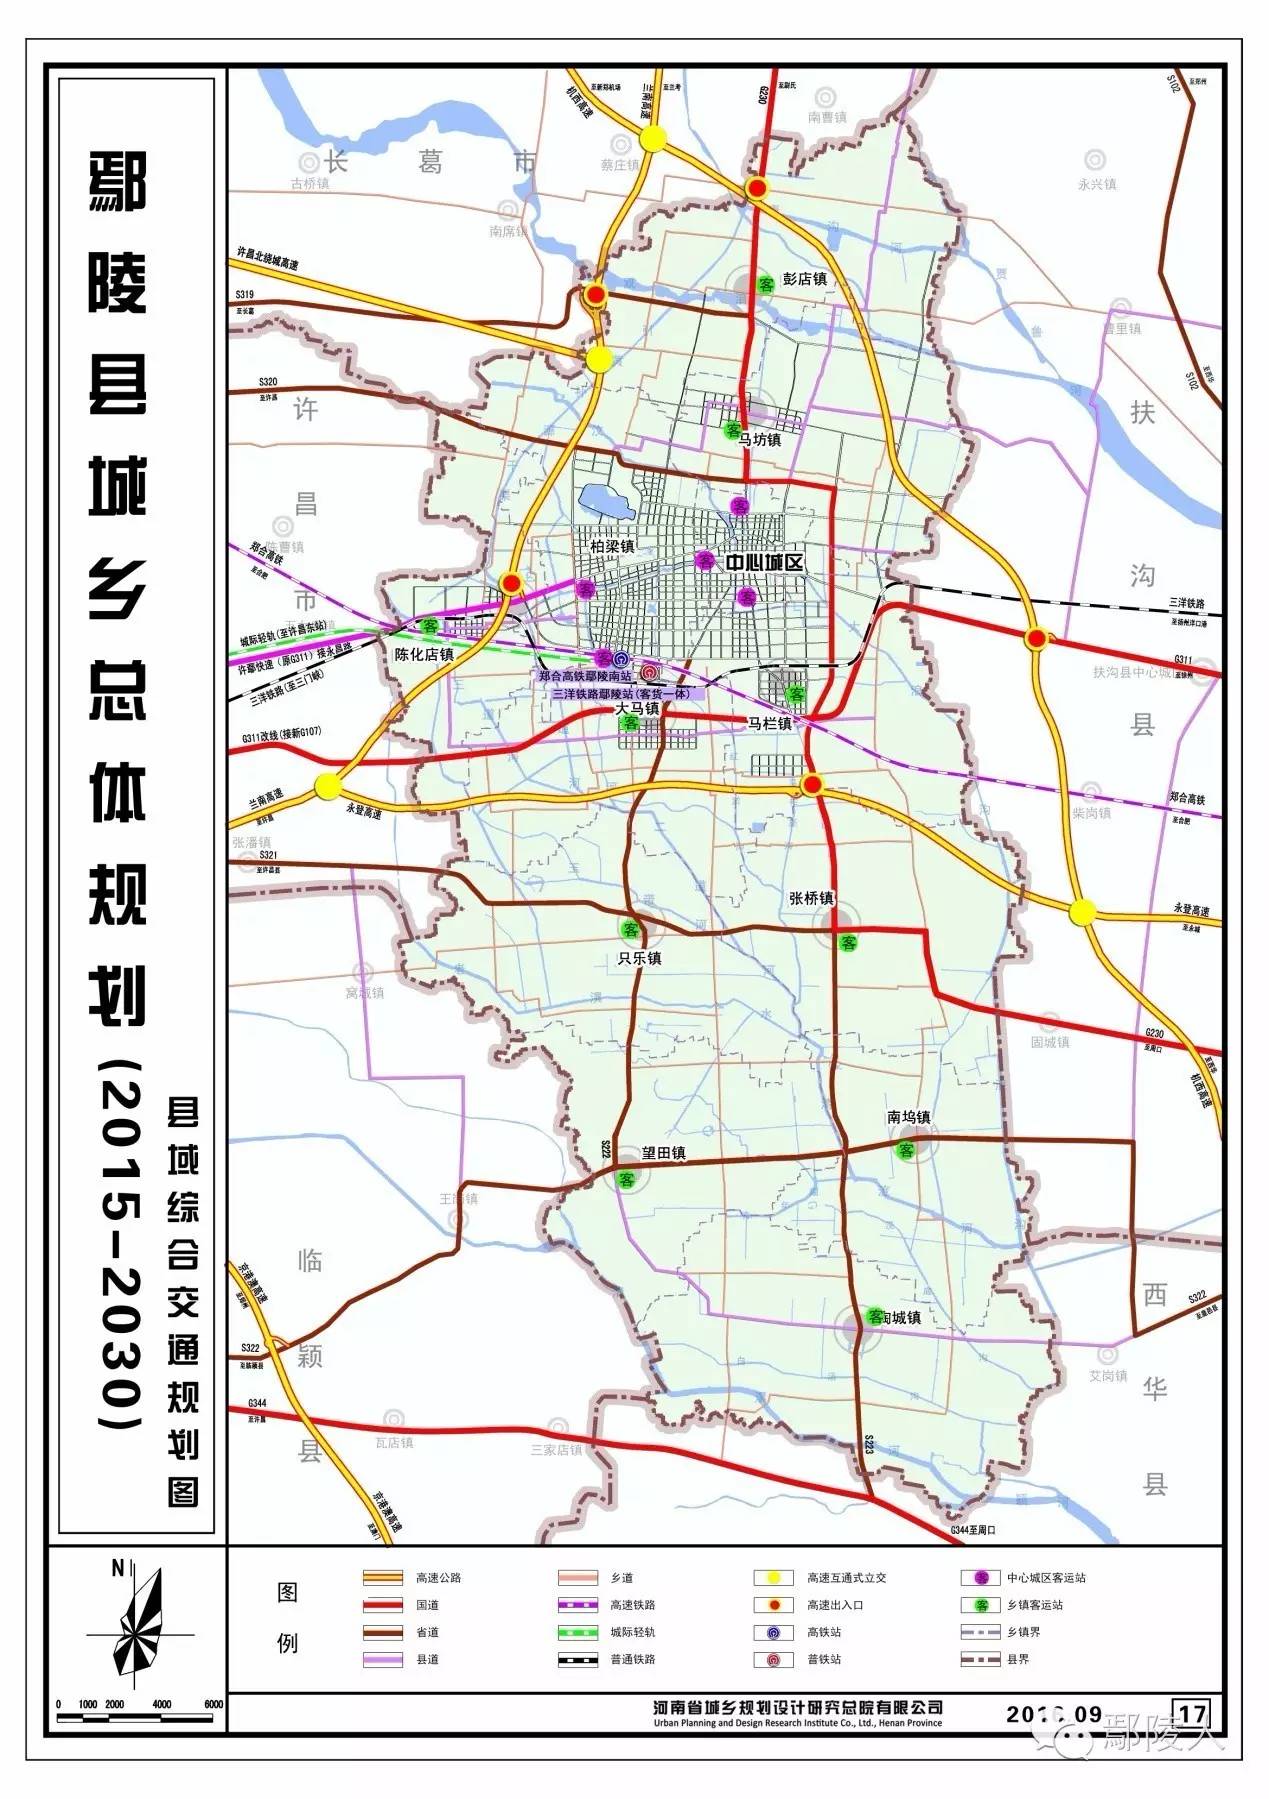 市重点项目国道311许周界至许昌城区段改建工程(许鄢段)和省道227许昌